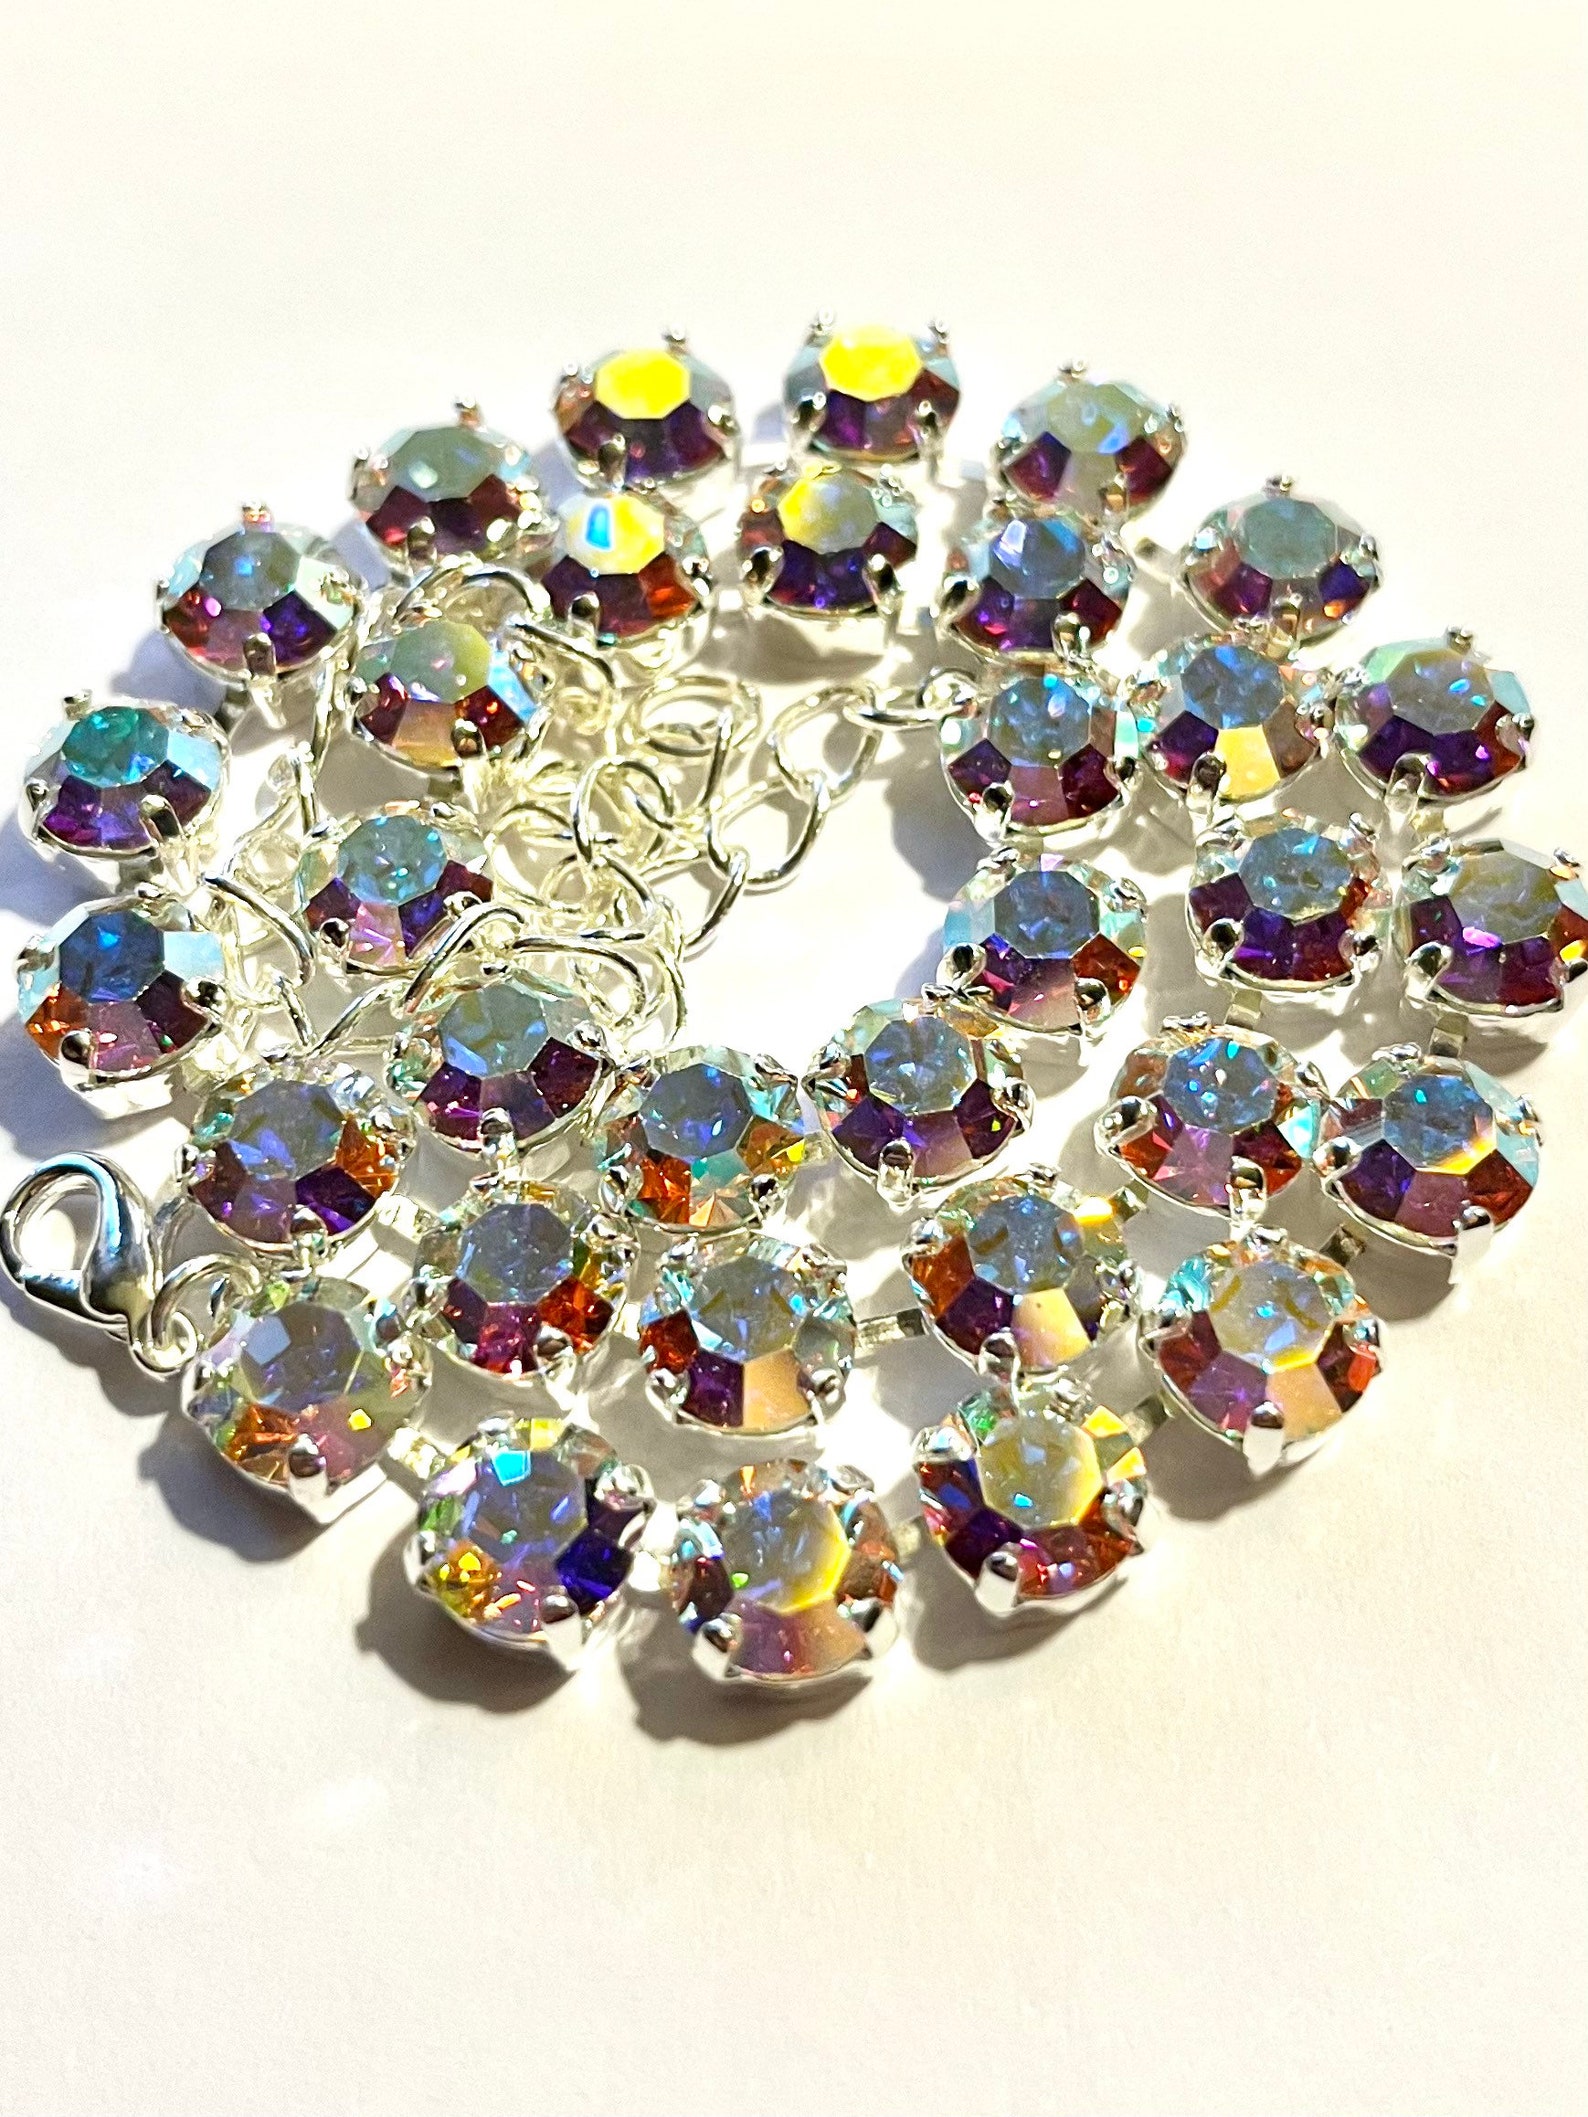 Swarovski Crystal Necklace Aurora Borealis Crystals - Etsy